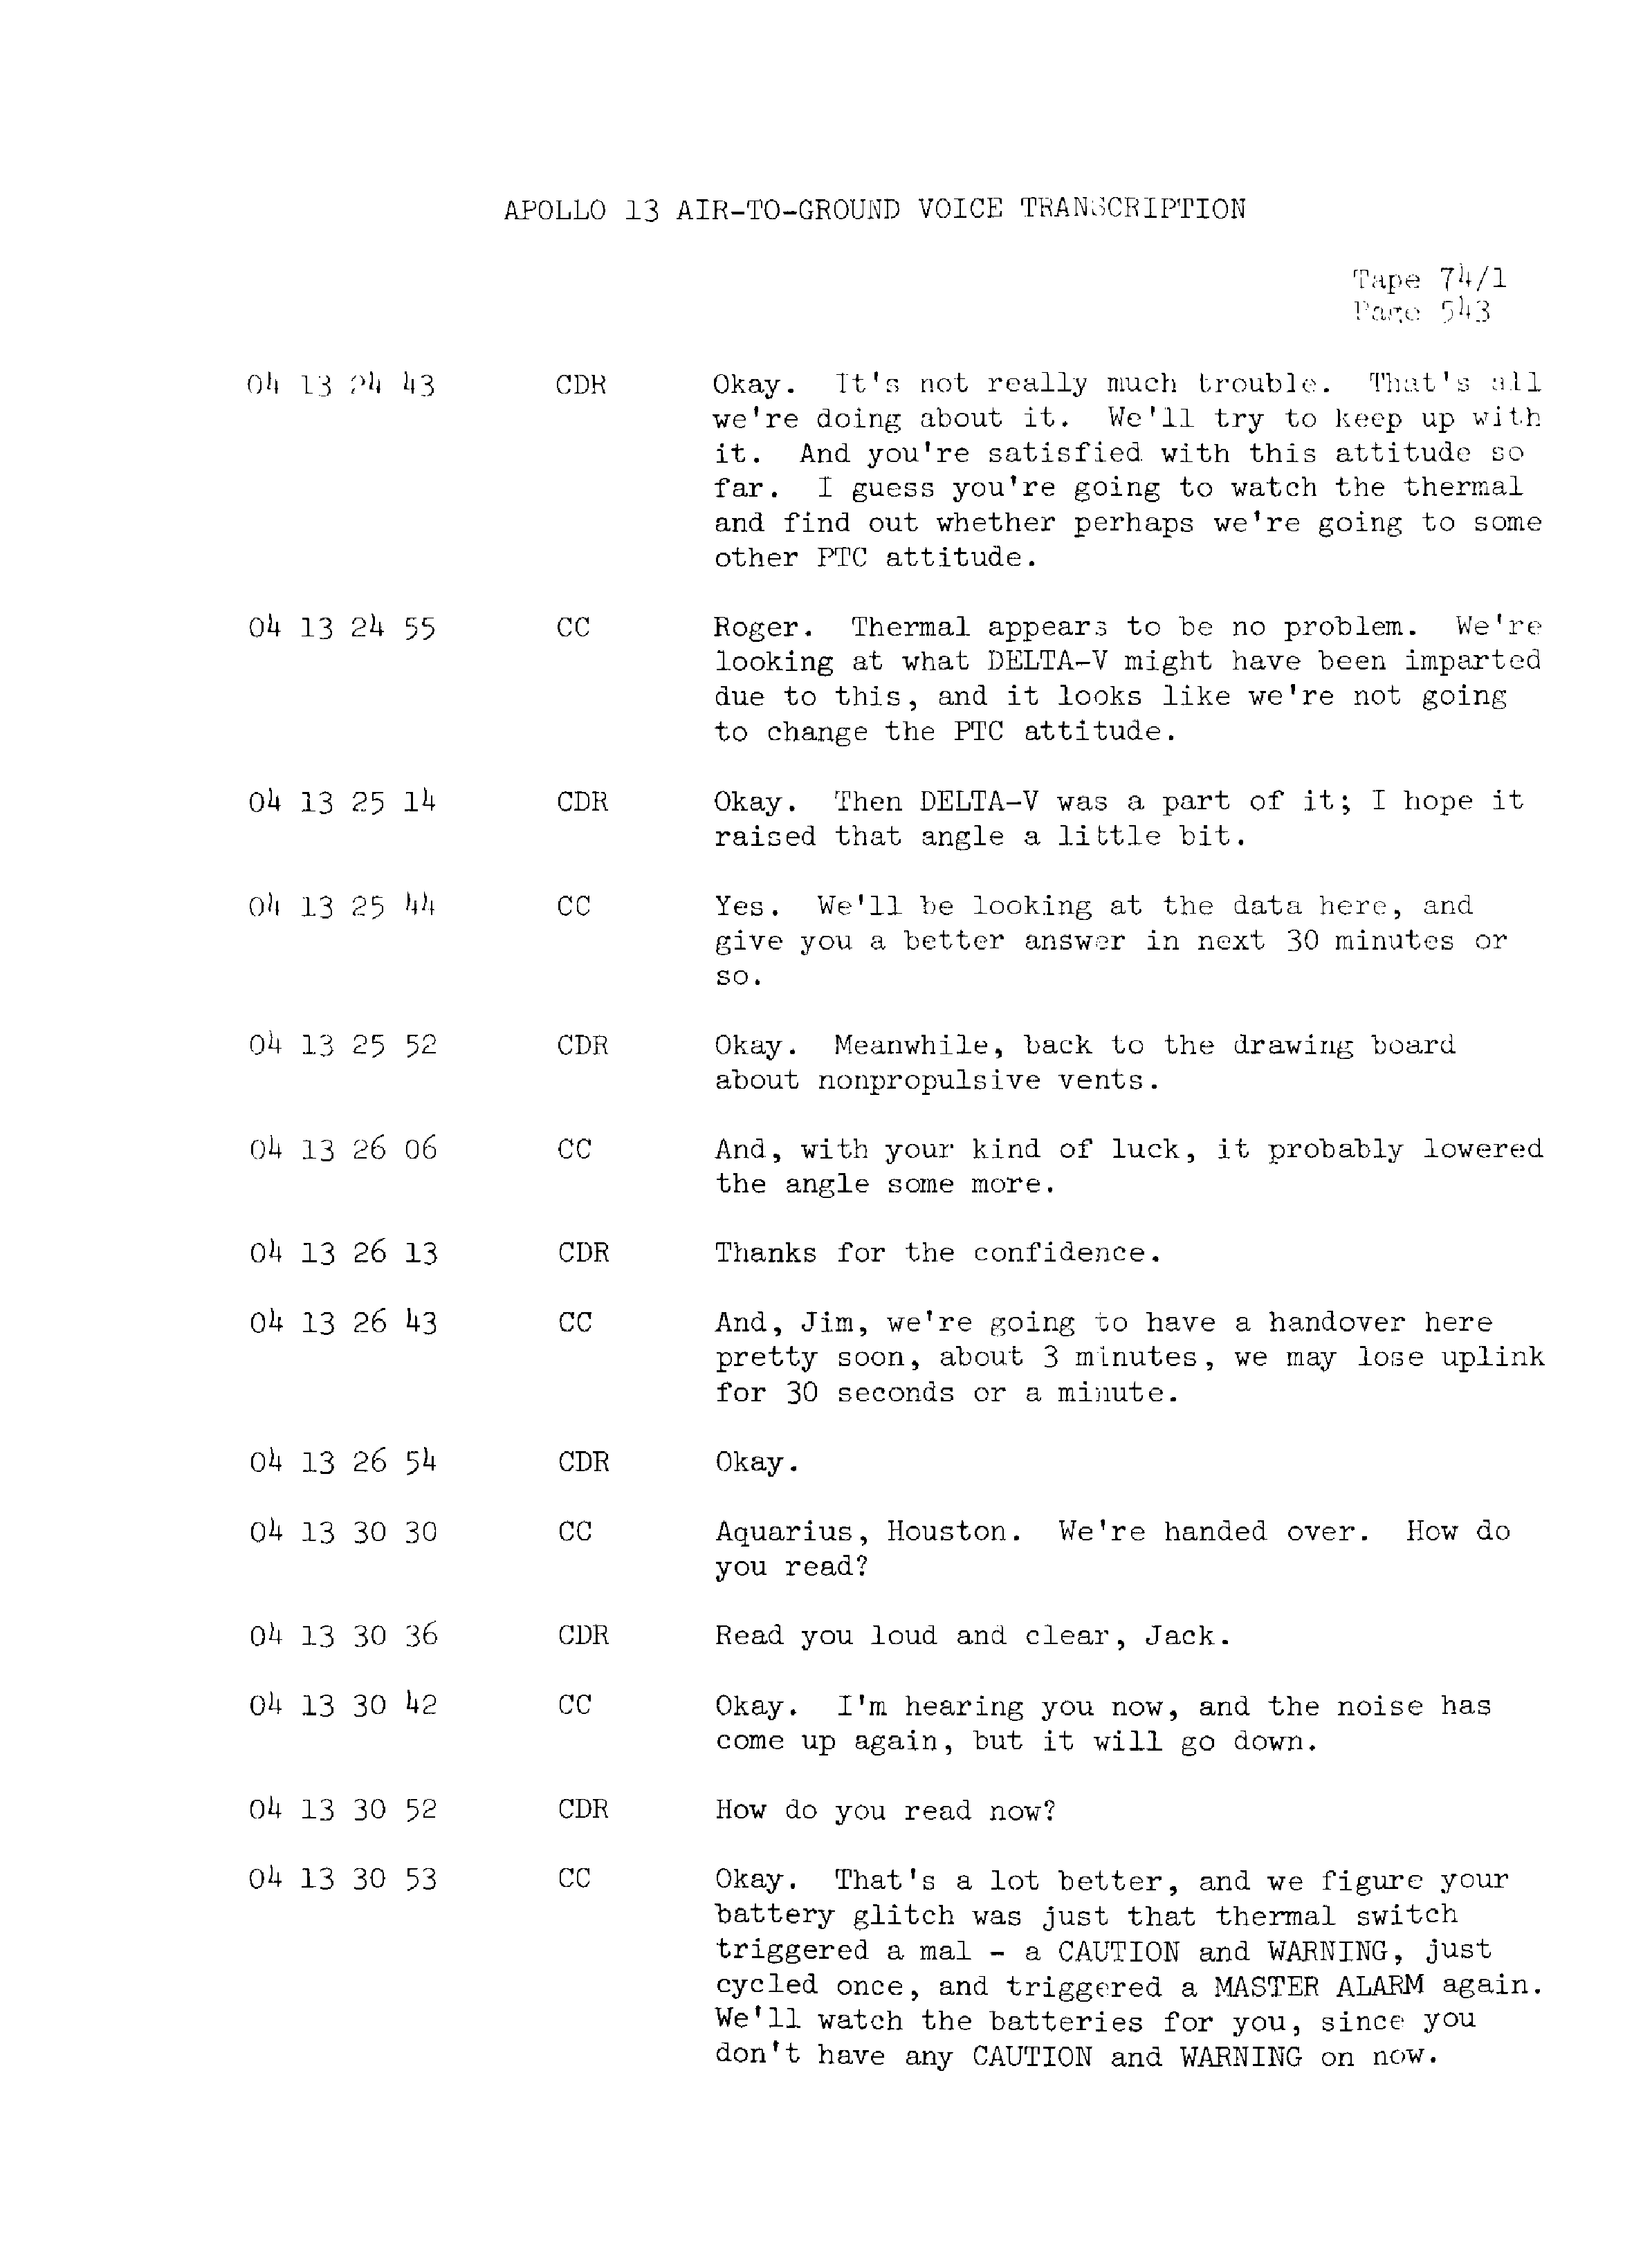 Page 550 of Apollo 13’s original transcript